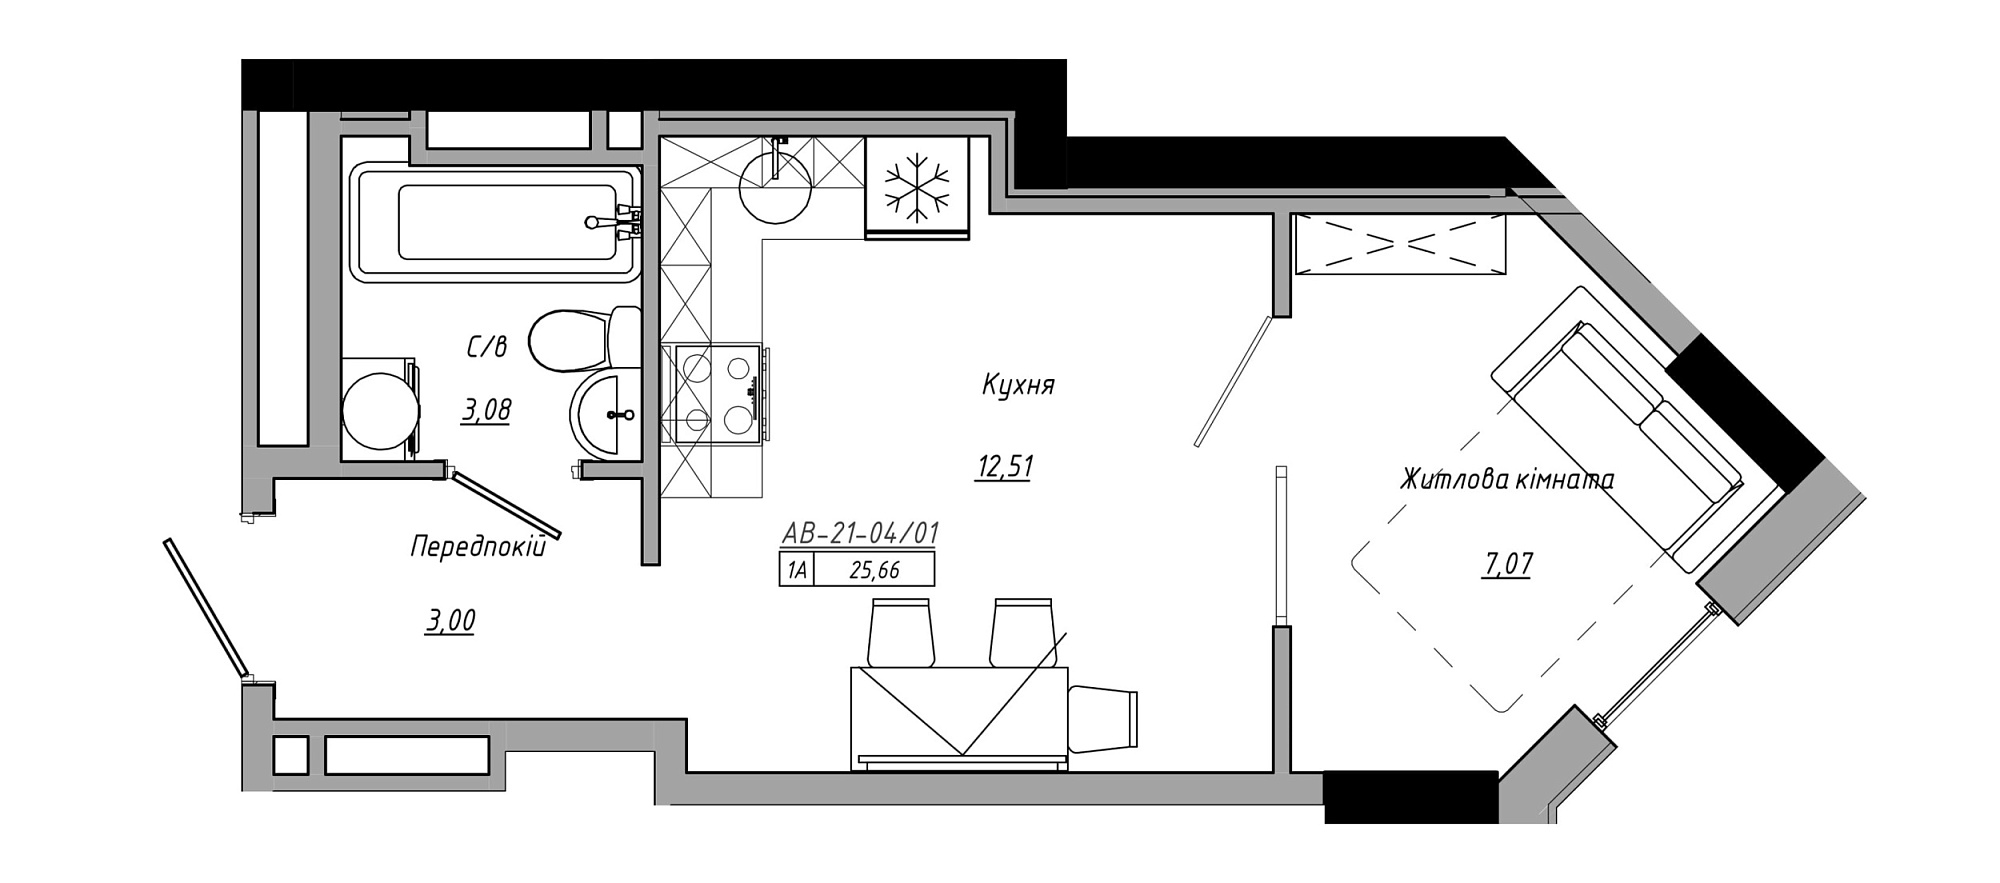 Планировка 1-к квартира площей 25.66м2, AB-21-04/00001.